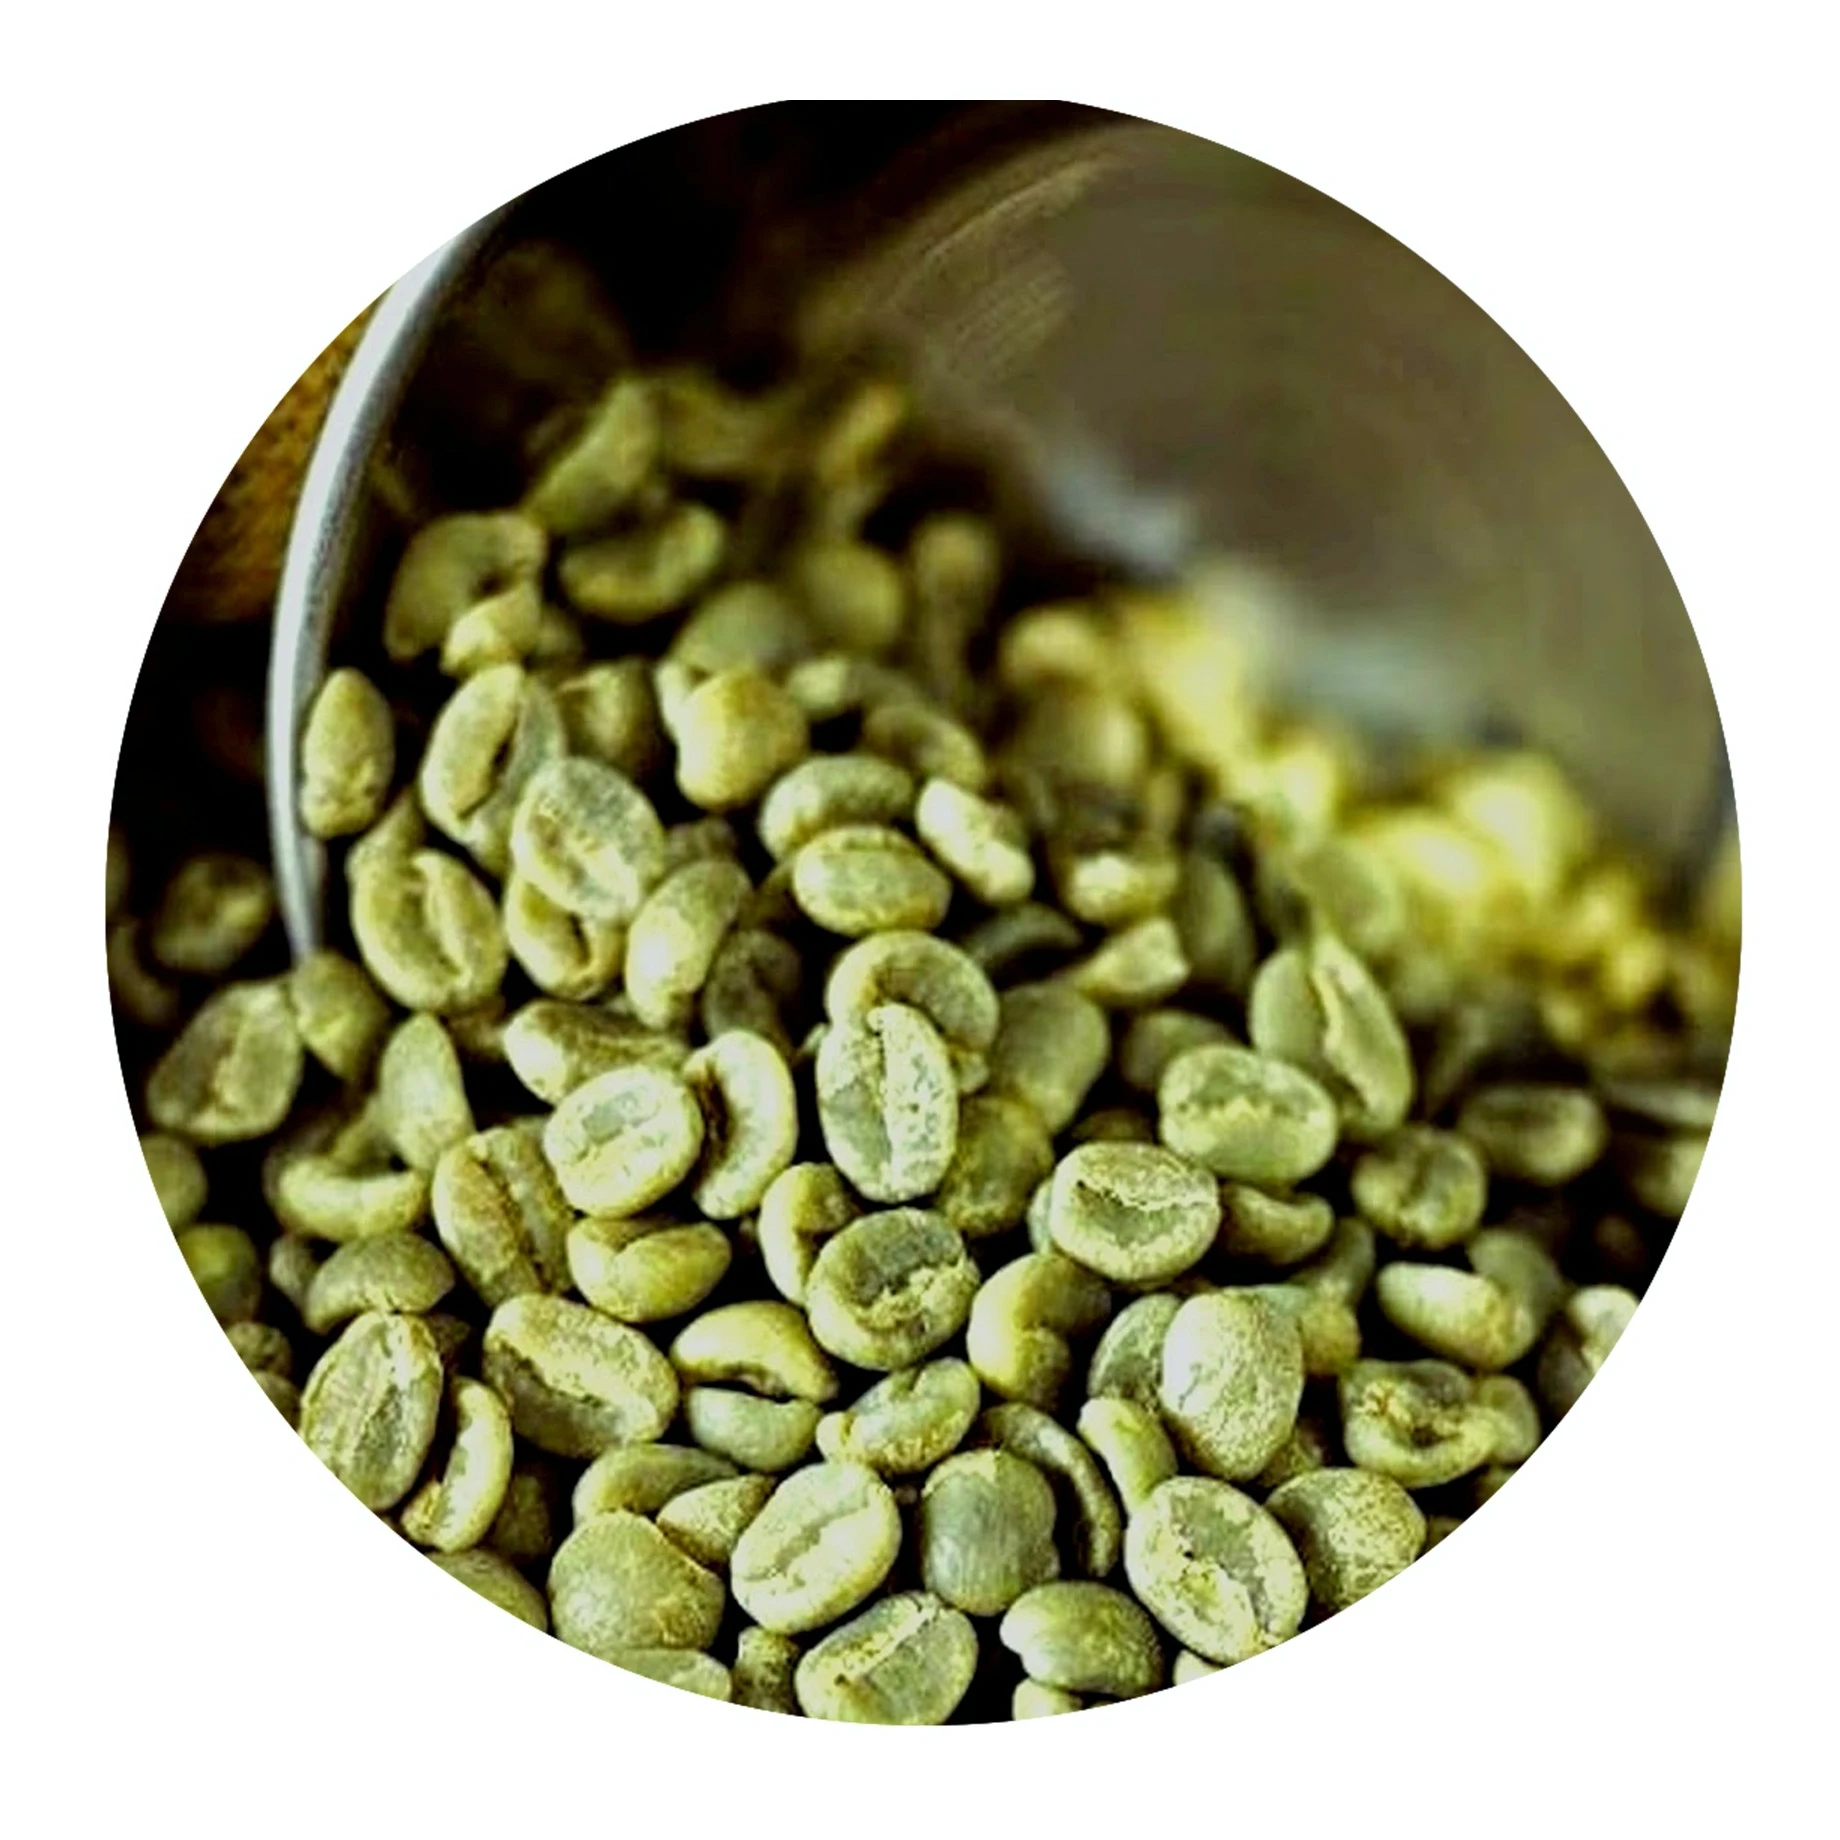 Кофе в зернах 1 кг робуста. Кофе в зернах Робуста купить в зеленых пакетах.